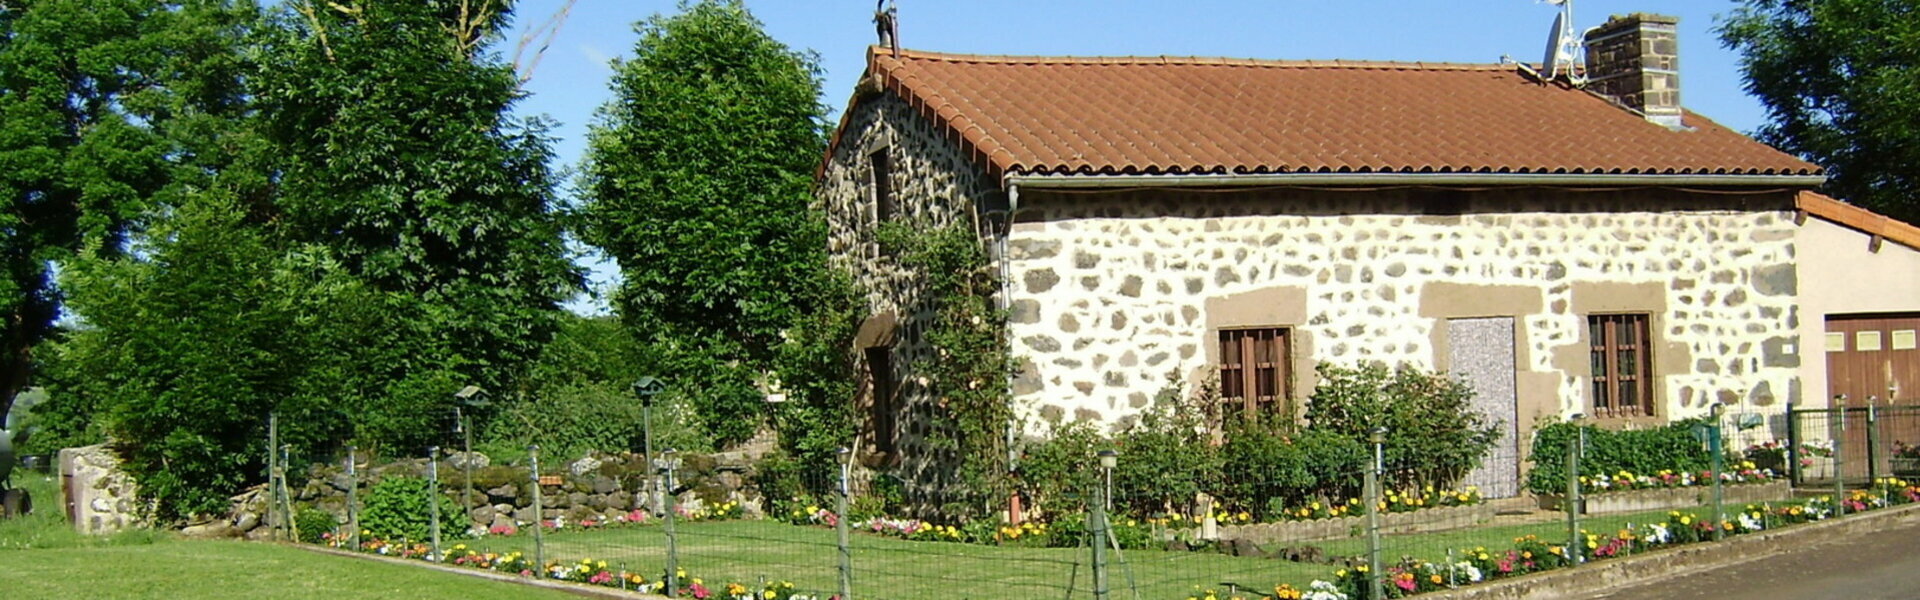 Mairie de Chaspuzac - Haute-Loire Auvergne